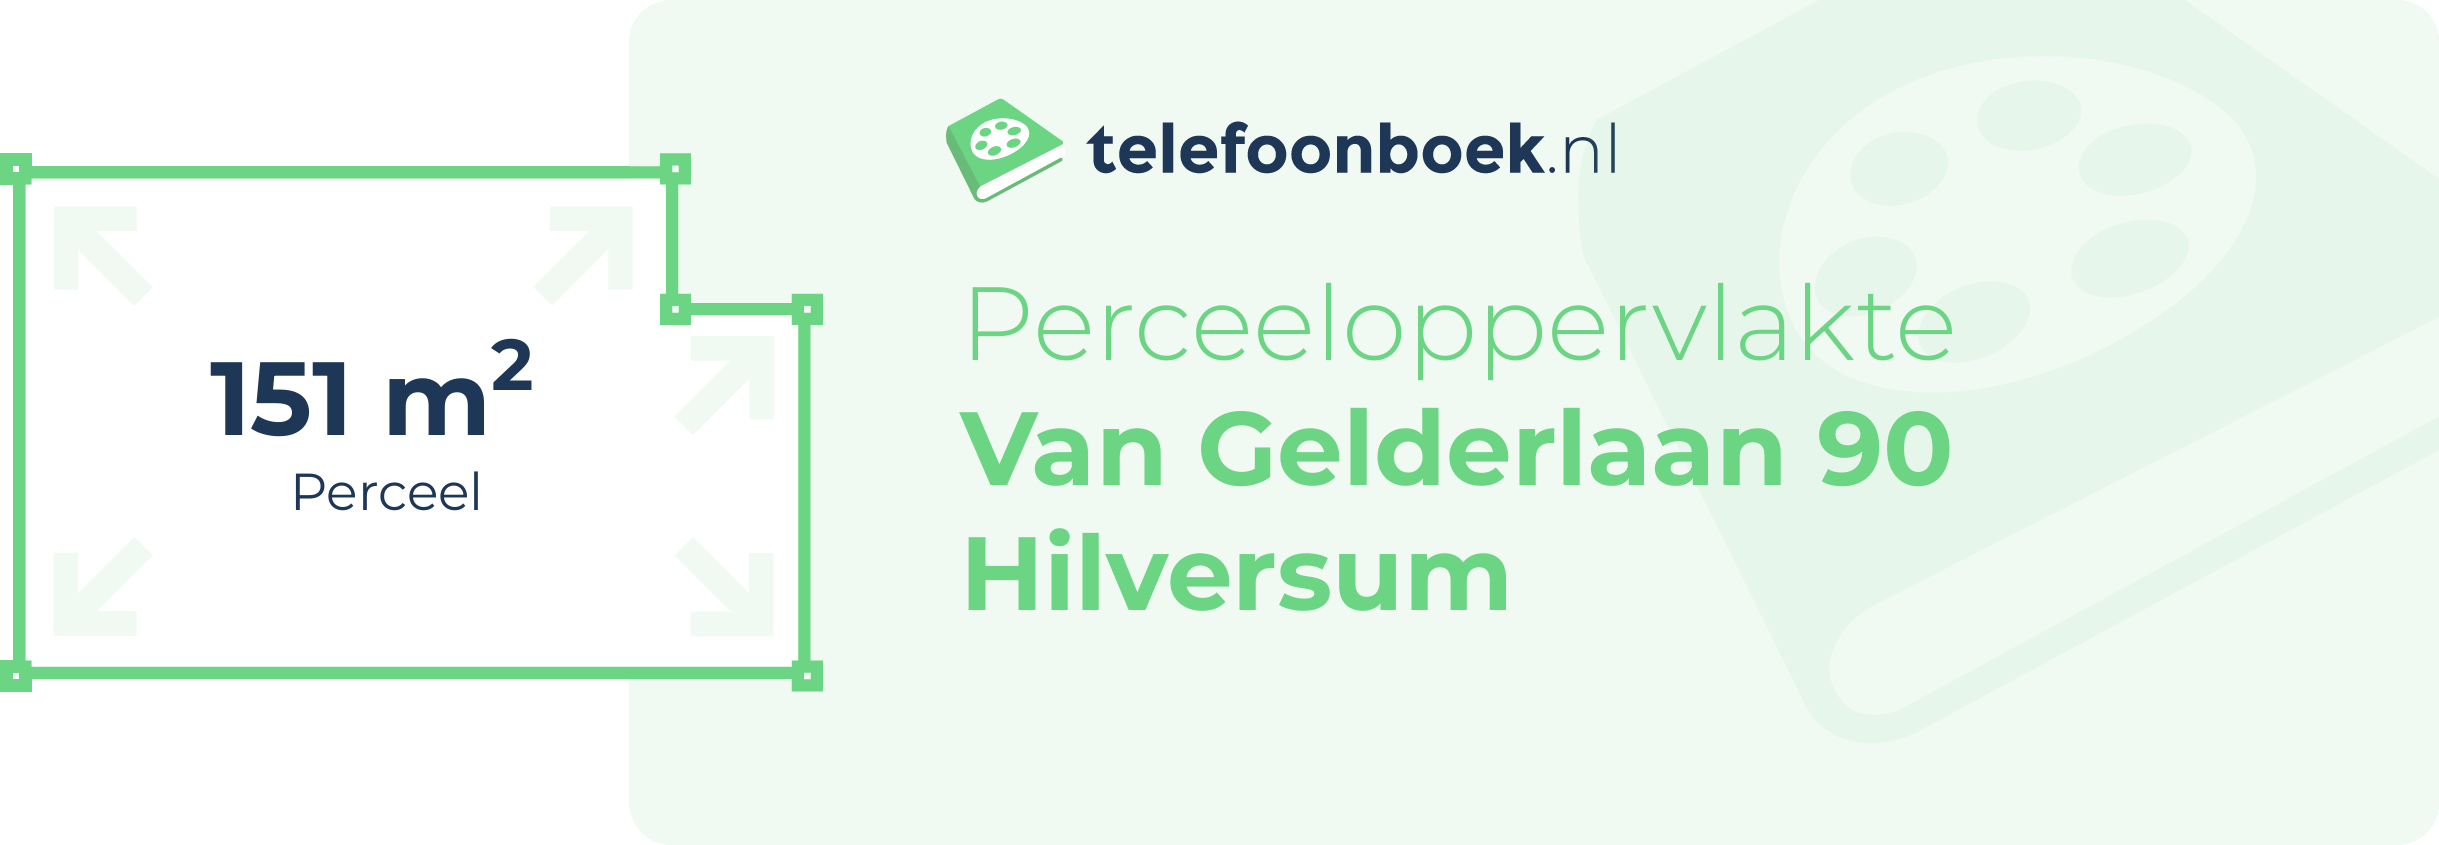 Perceeloppervlakte Van Gelderlaan 90 Hilversum